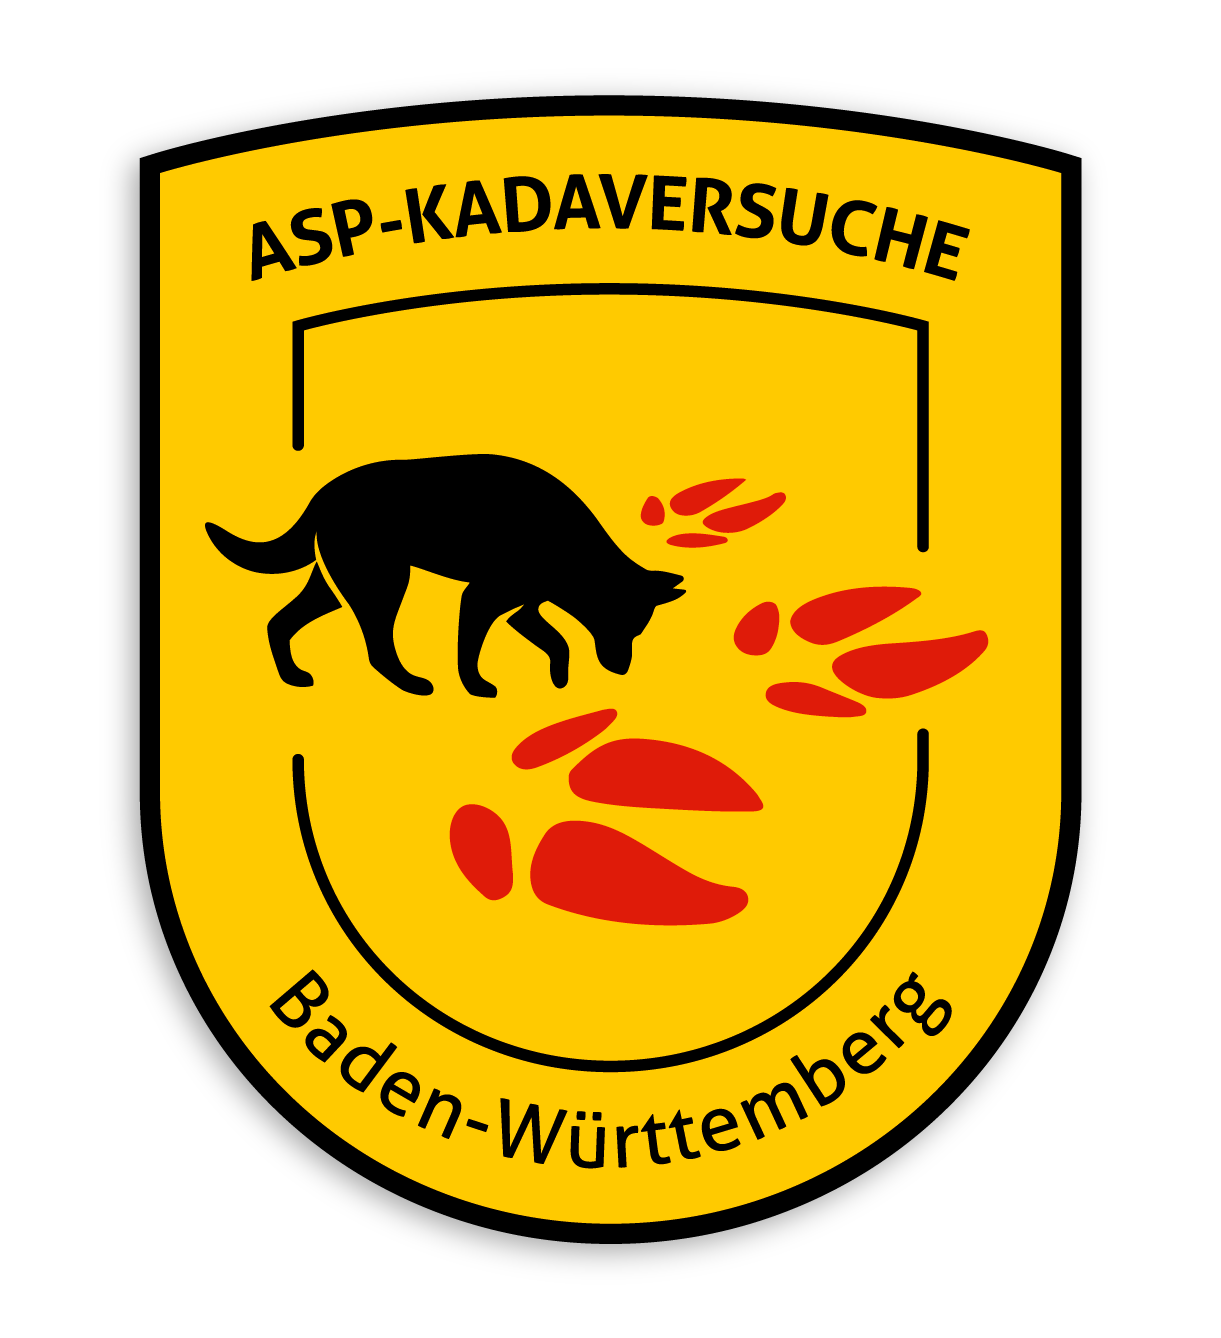 Kadaver-Suche Afrikanische Schweinepest (ASP)